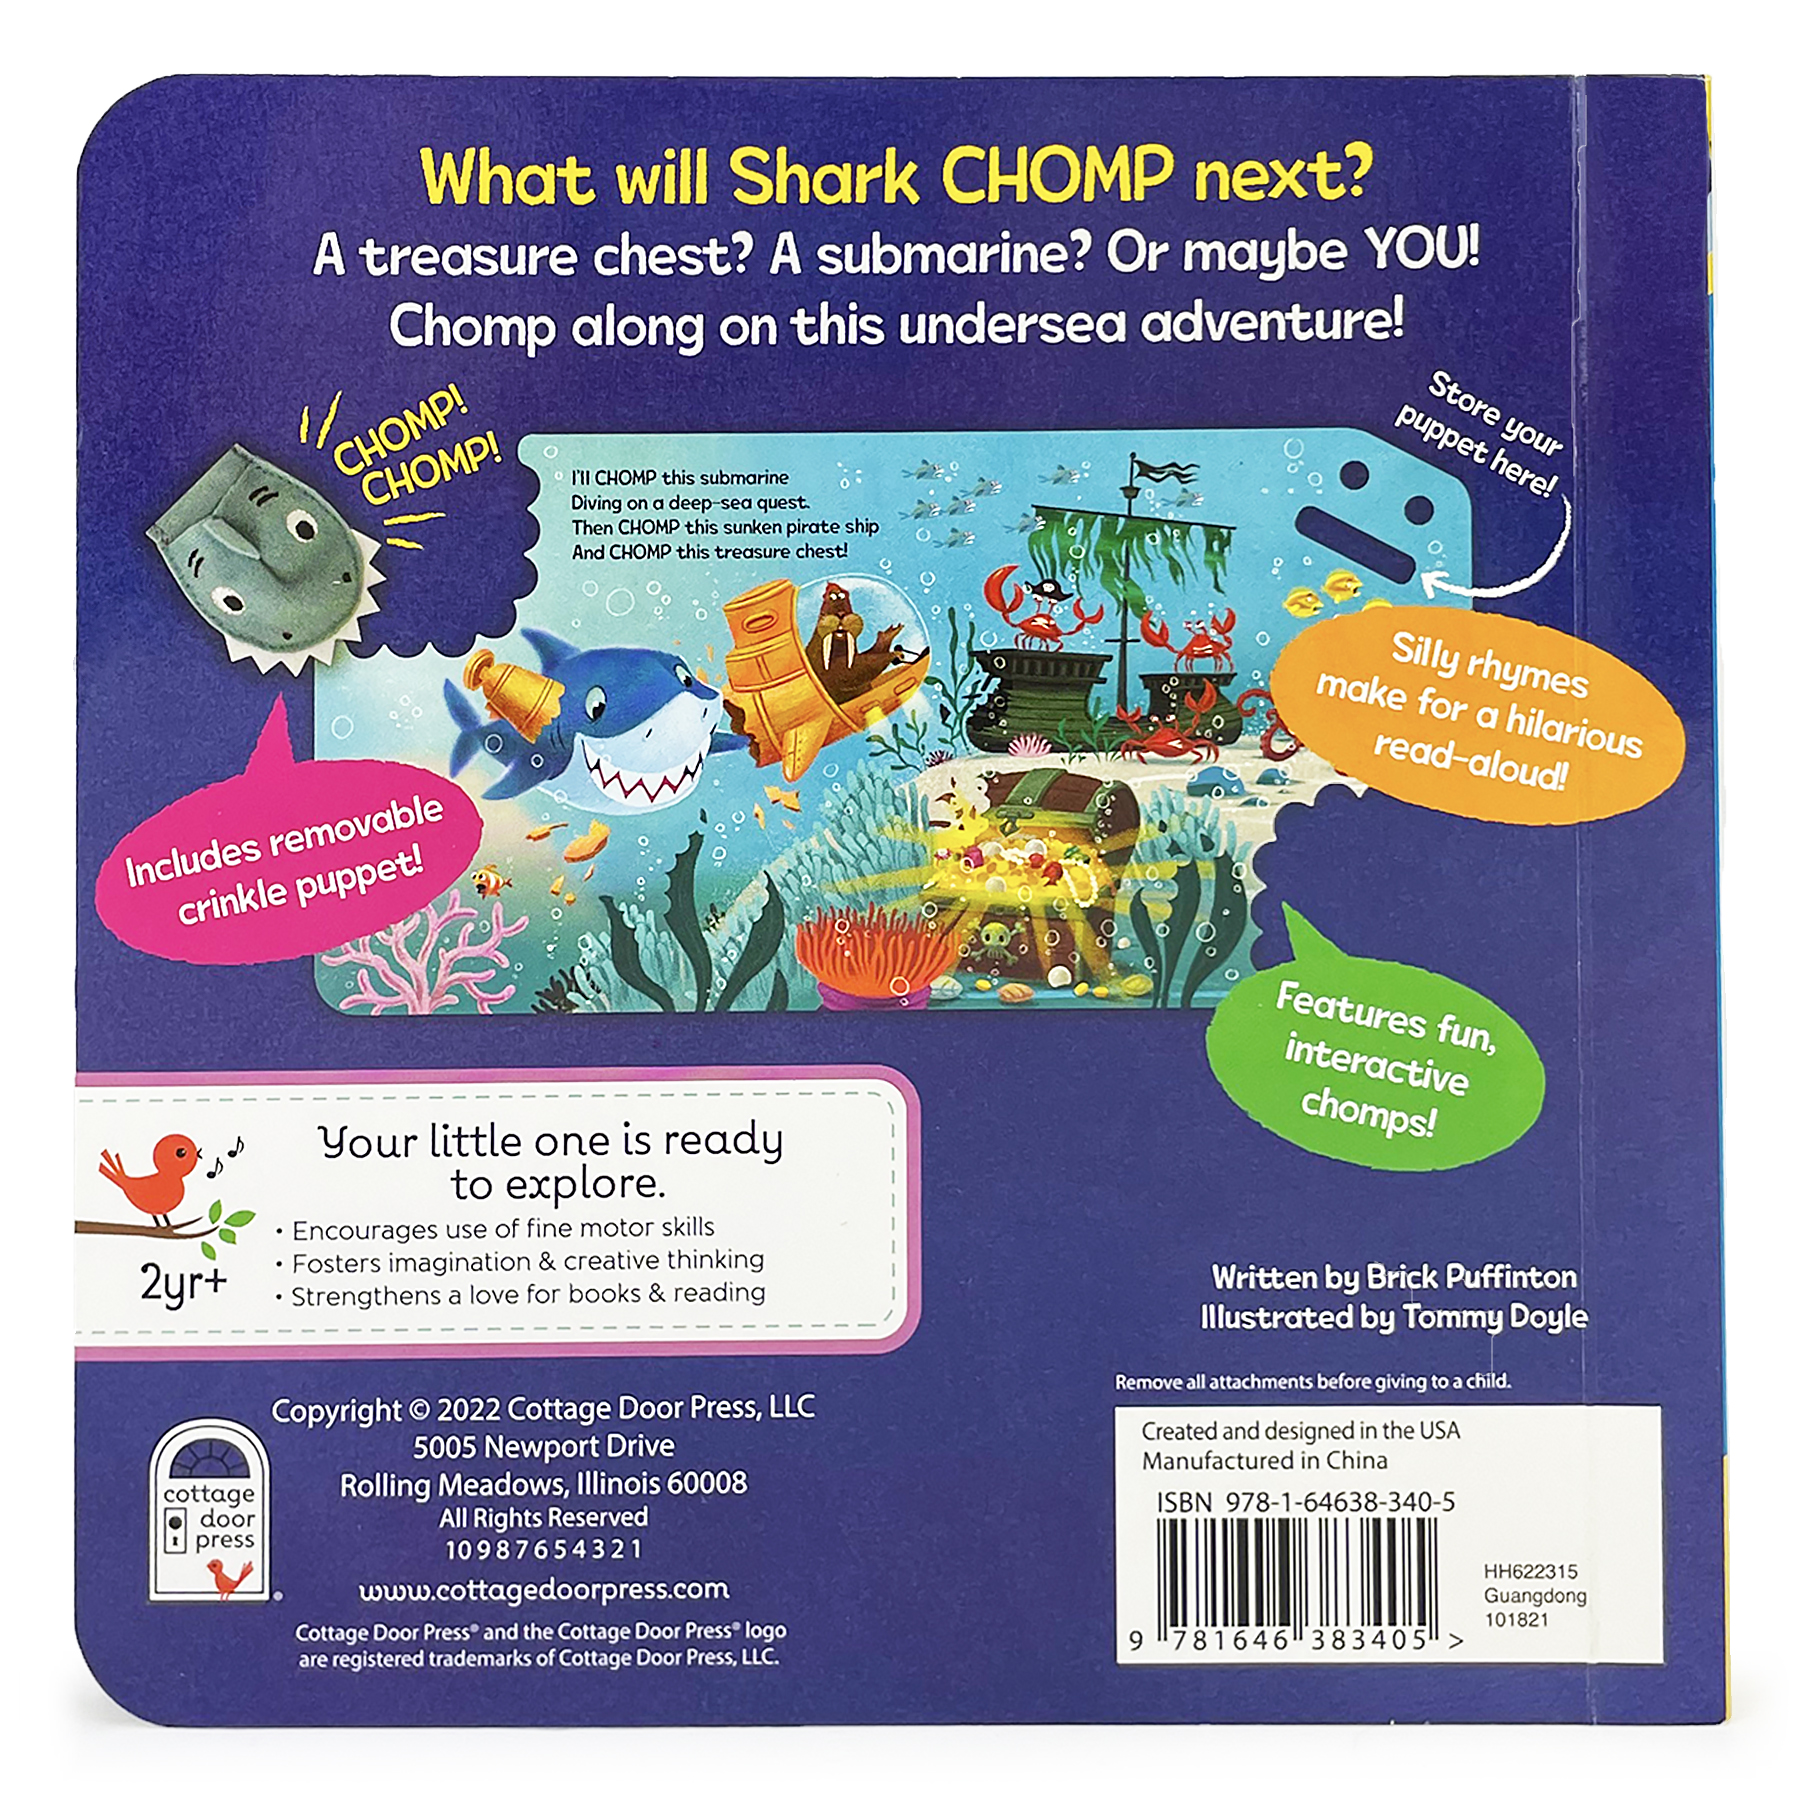 Chomp Chomp Shark